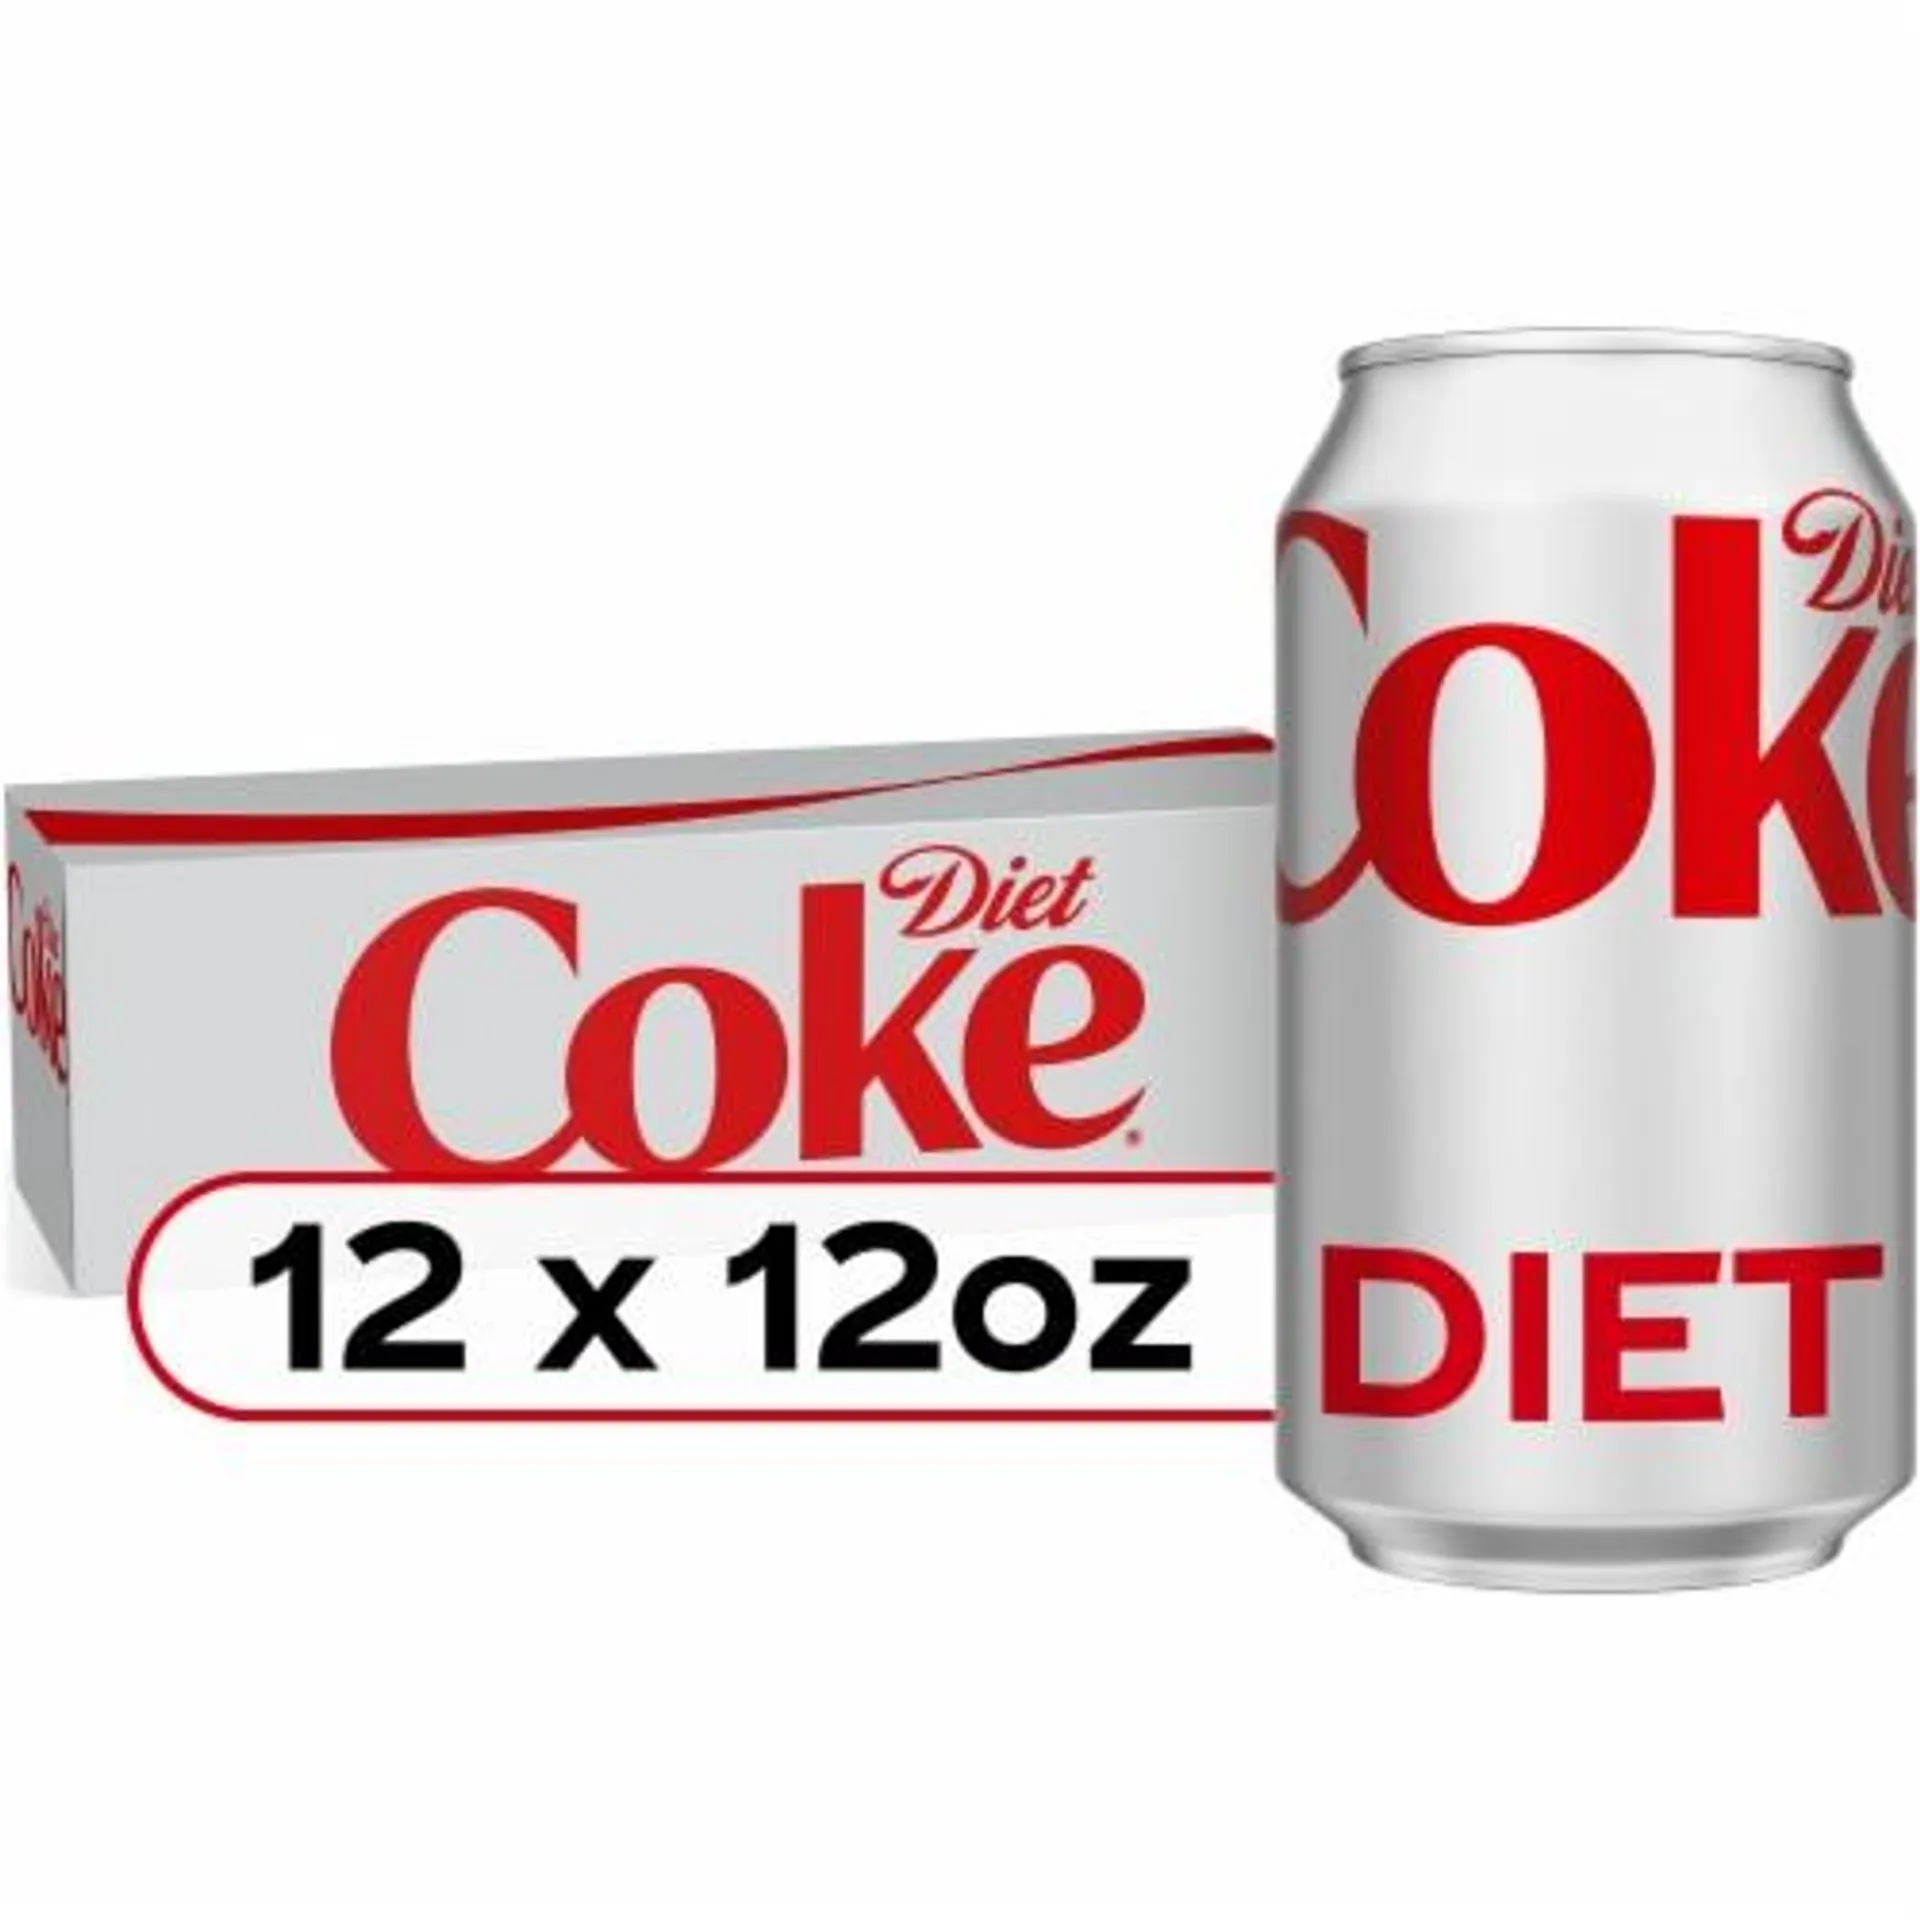 Diet Coke® Soda Cans